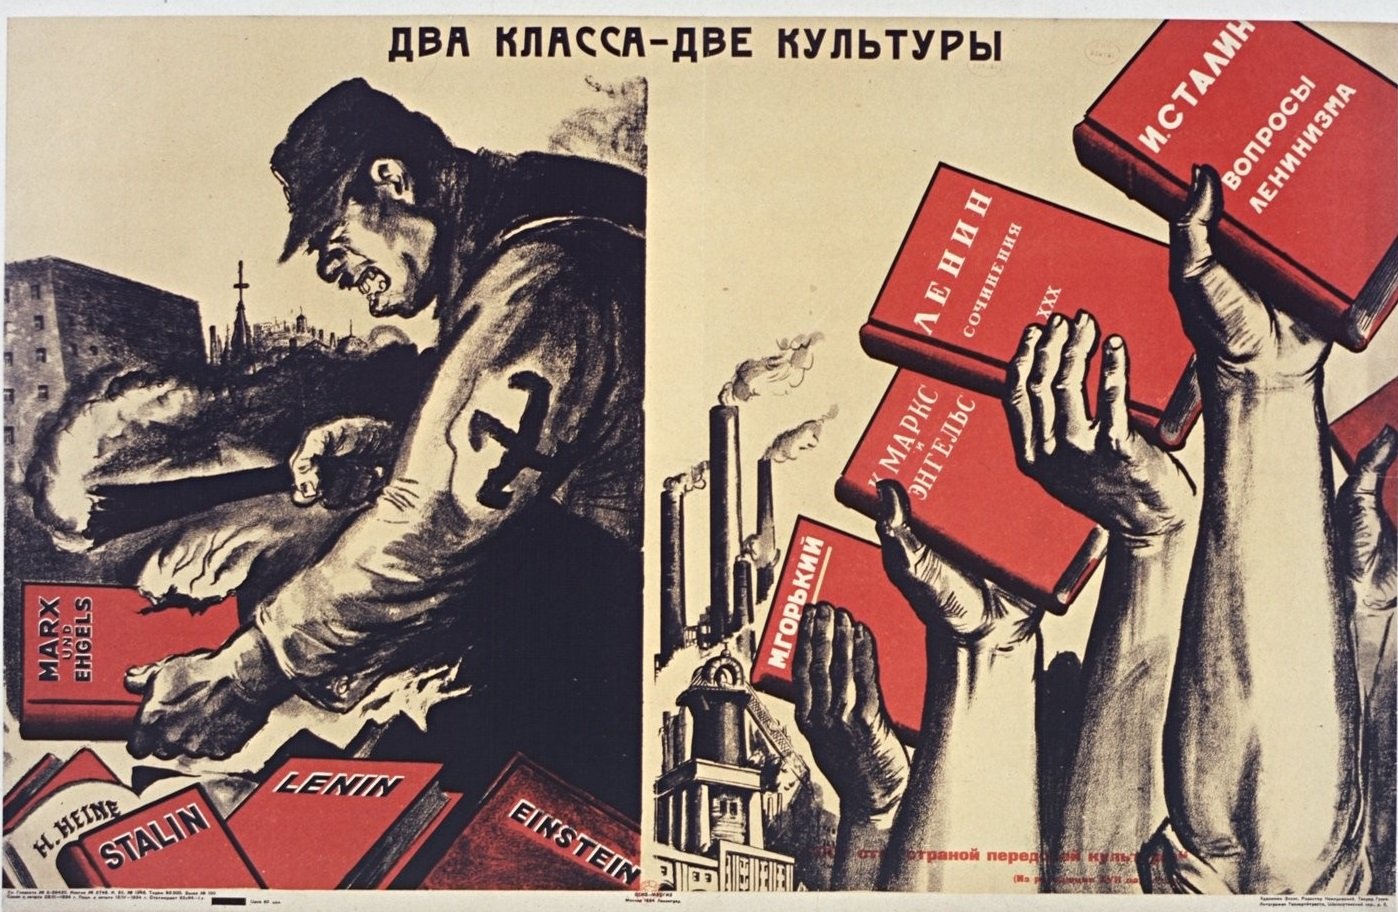 Сталин классовая борьба. Советские агитационные плакаты. Советские политические плакаты. Советские революционные плакаты. Советский плакат 20-30-х годов.